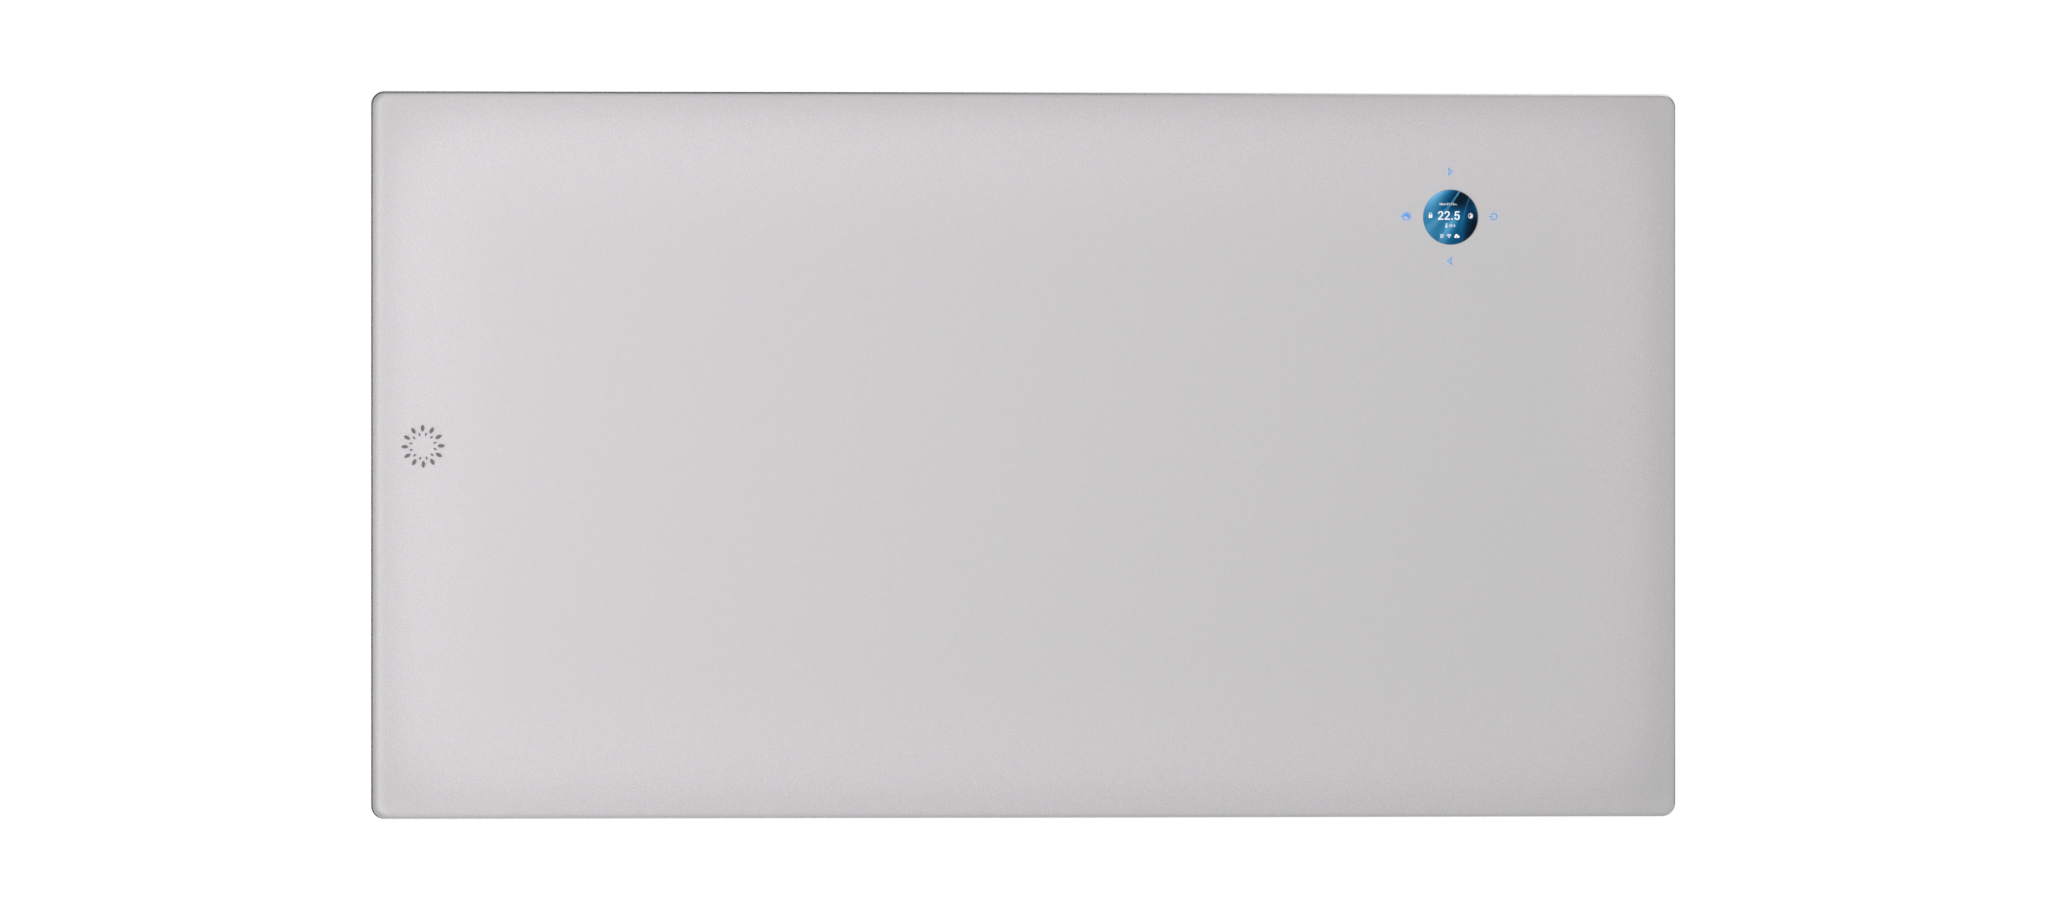 TowelBoy – SMART sklenený vykurovací panel s elegantným dizajnom - Hevolta - Spájame technológie s pohodlím